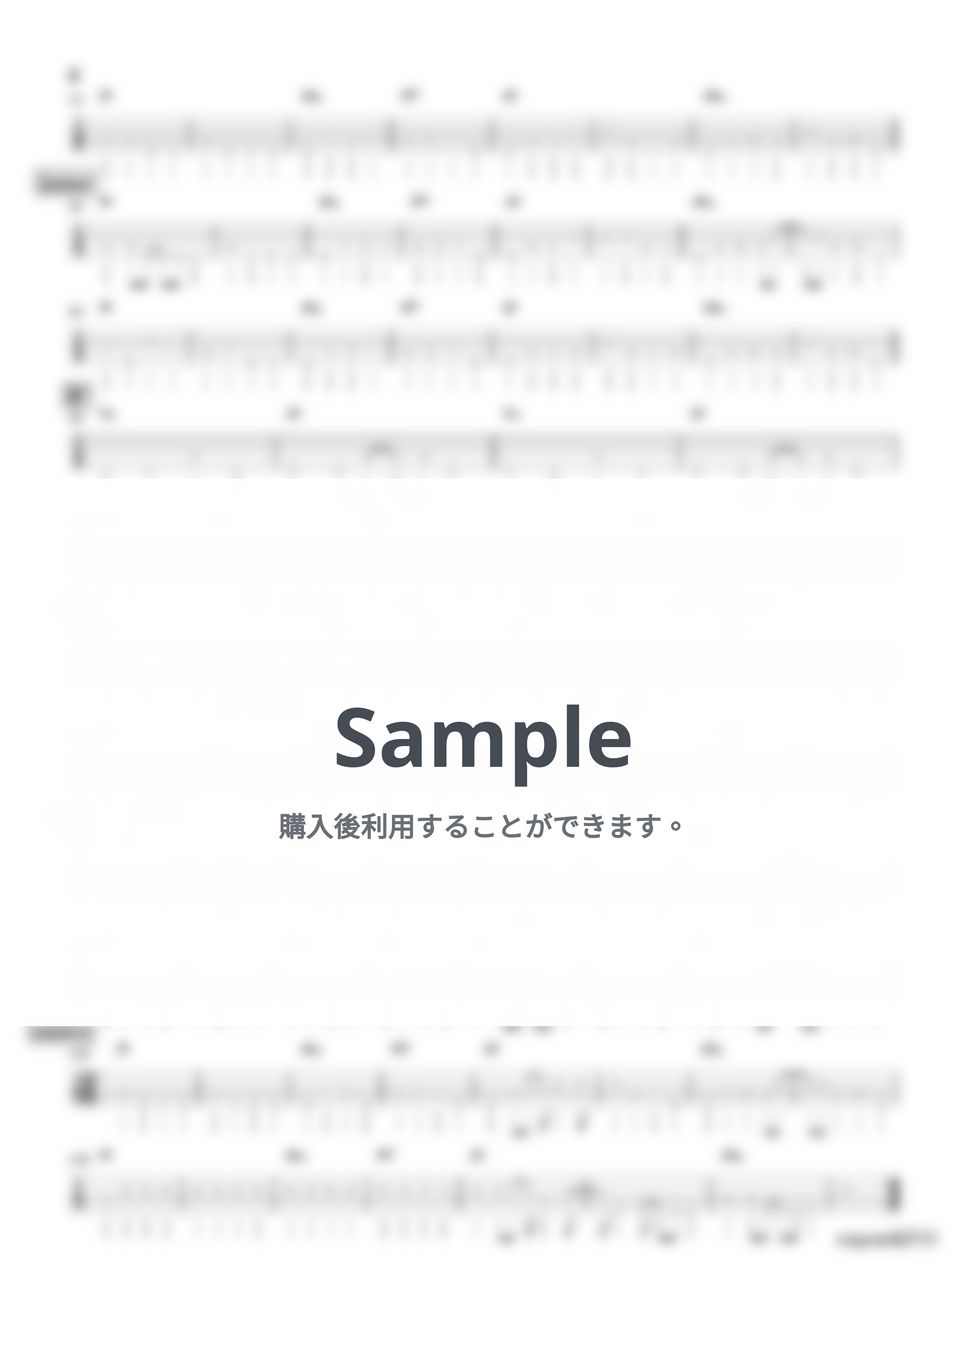 東京スカパラダイスオーケストラ - 銀河と迷路 (『ベースTAB譜』4弦ベース対応) by 箱譜屋